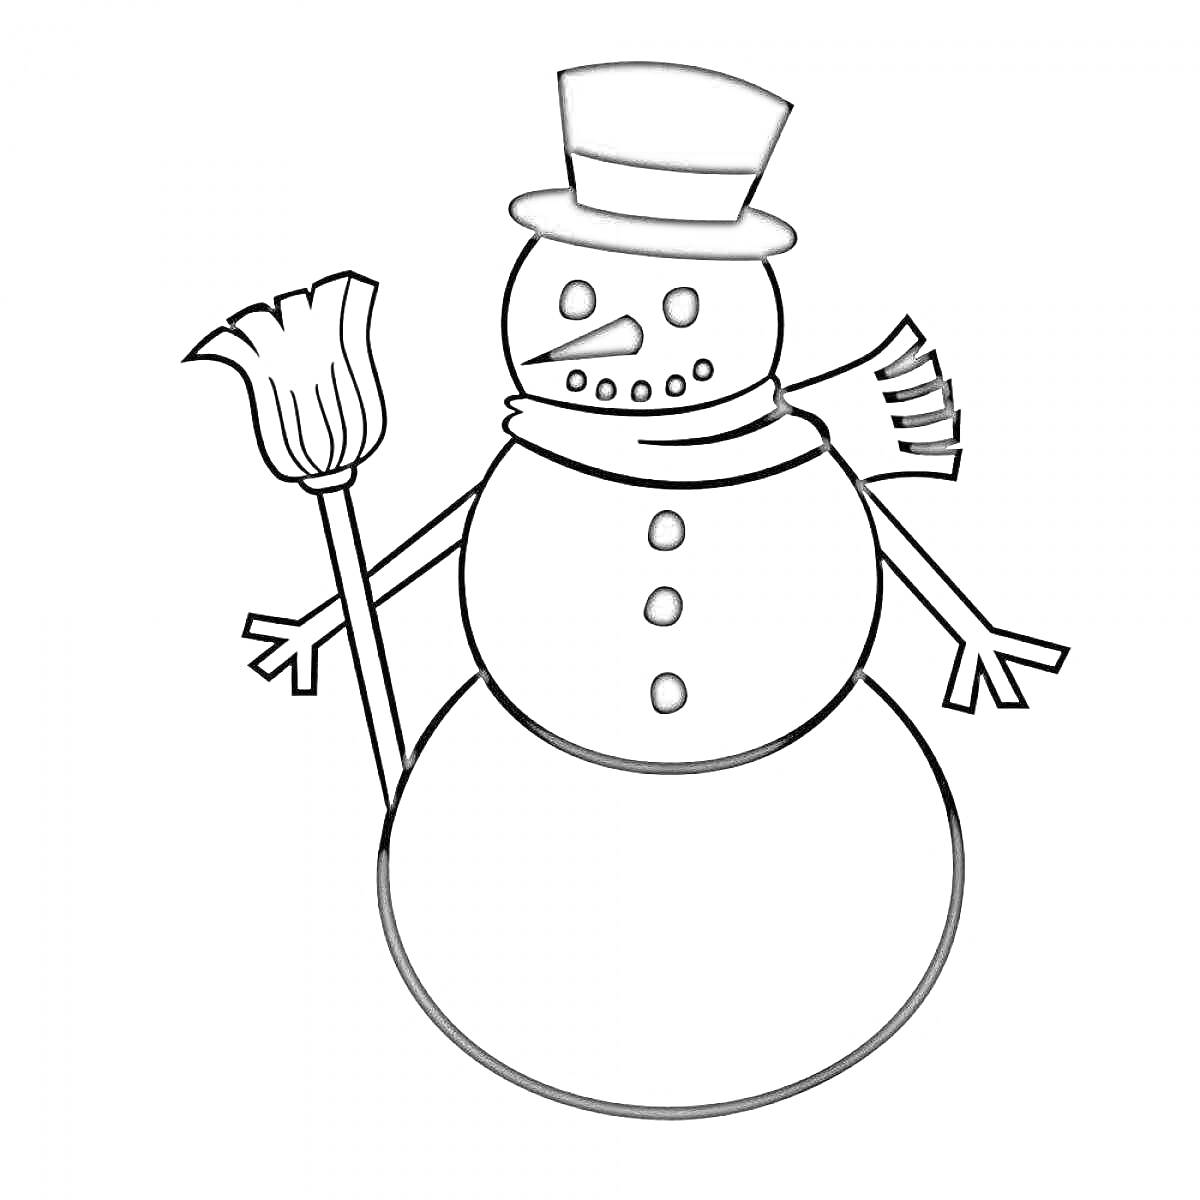 Раскраска Снеговик с метлой, шляпой и шарфом